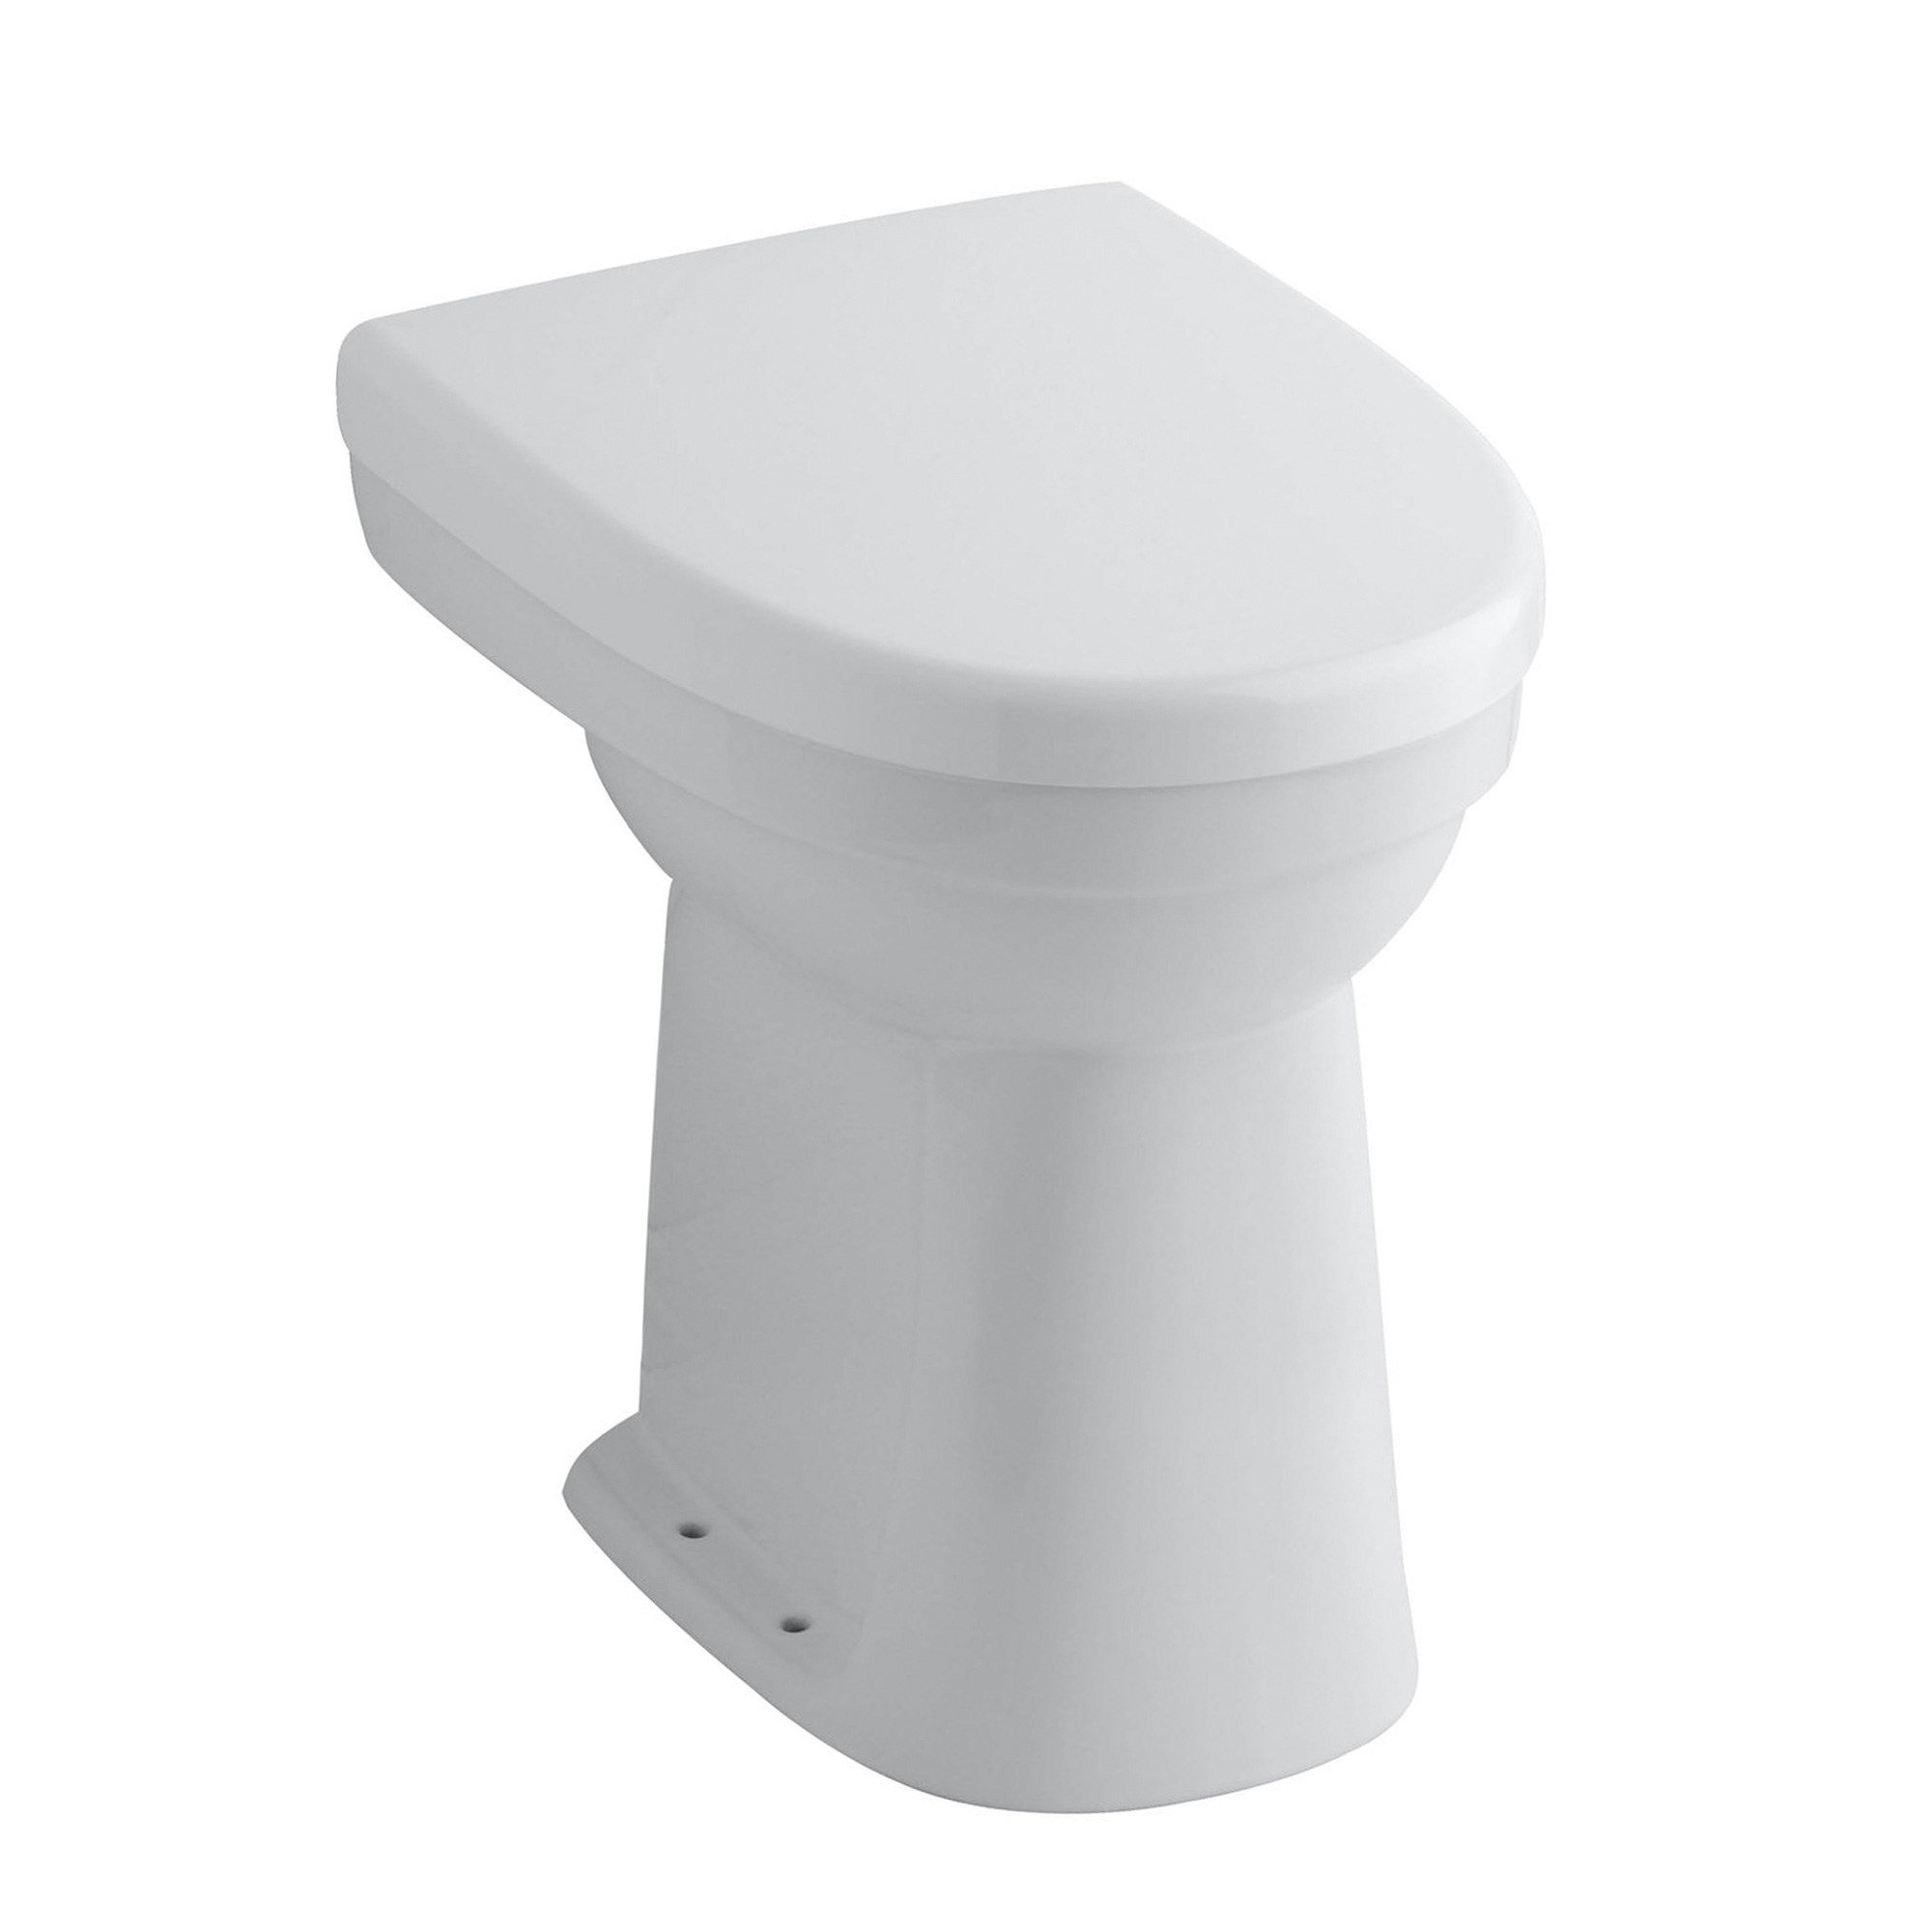 Standflachspül WC Toilette Stand Flach weiß um 10 cm erhöht = Gesamthöhe 50 cm 